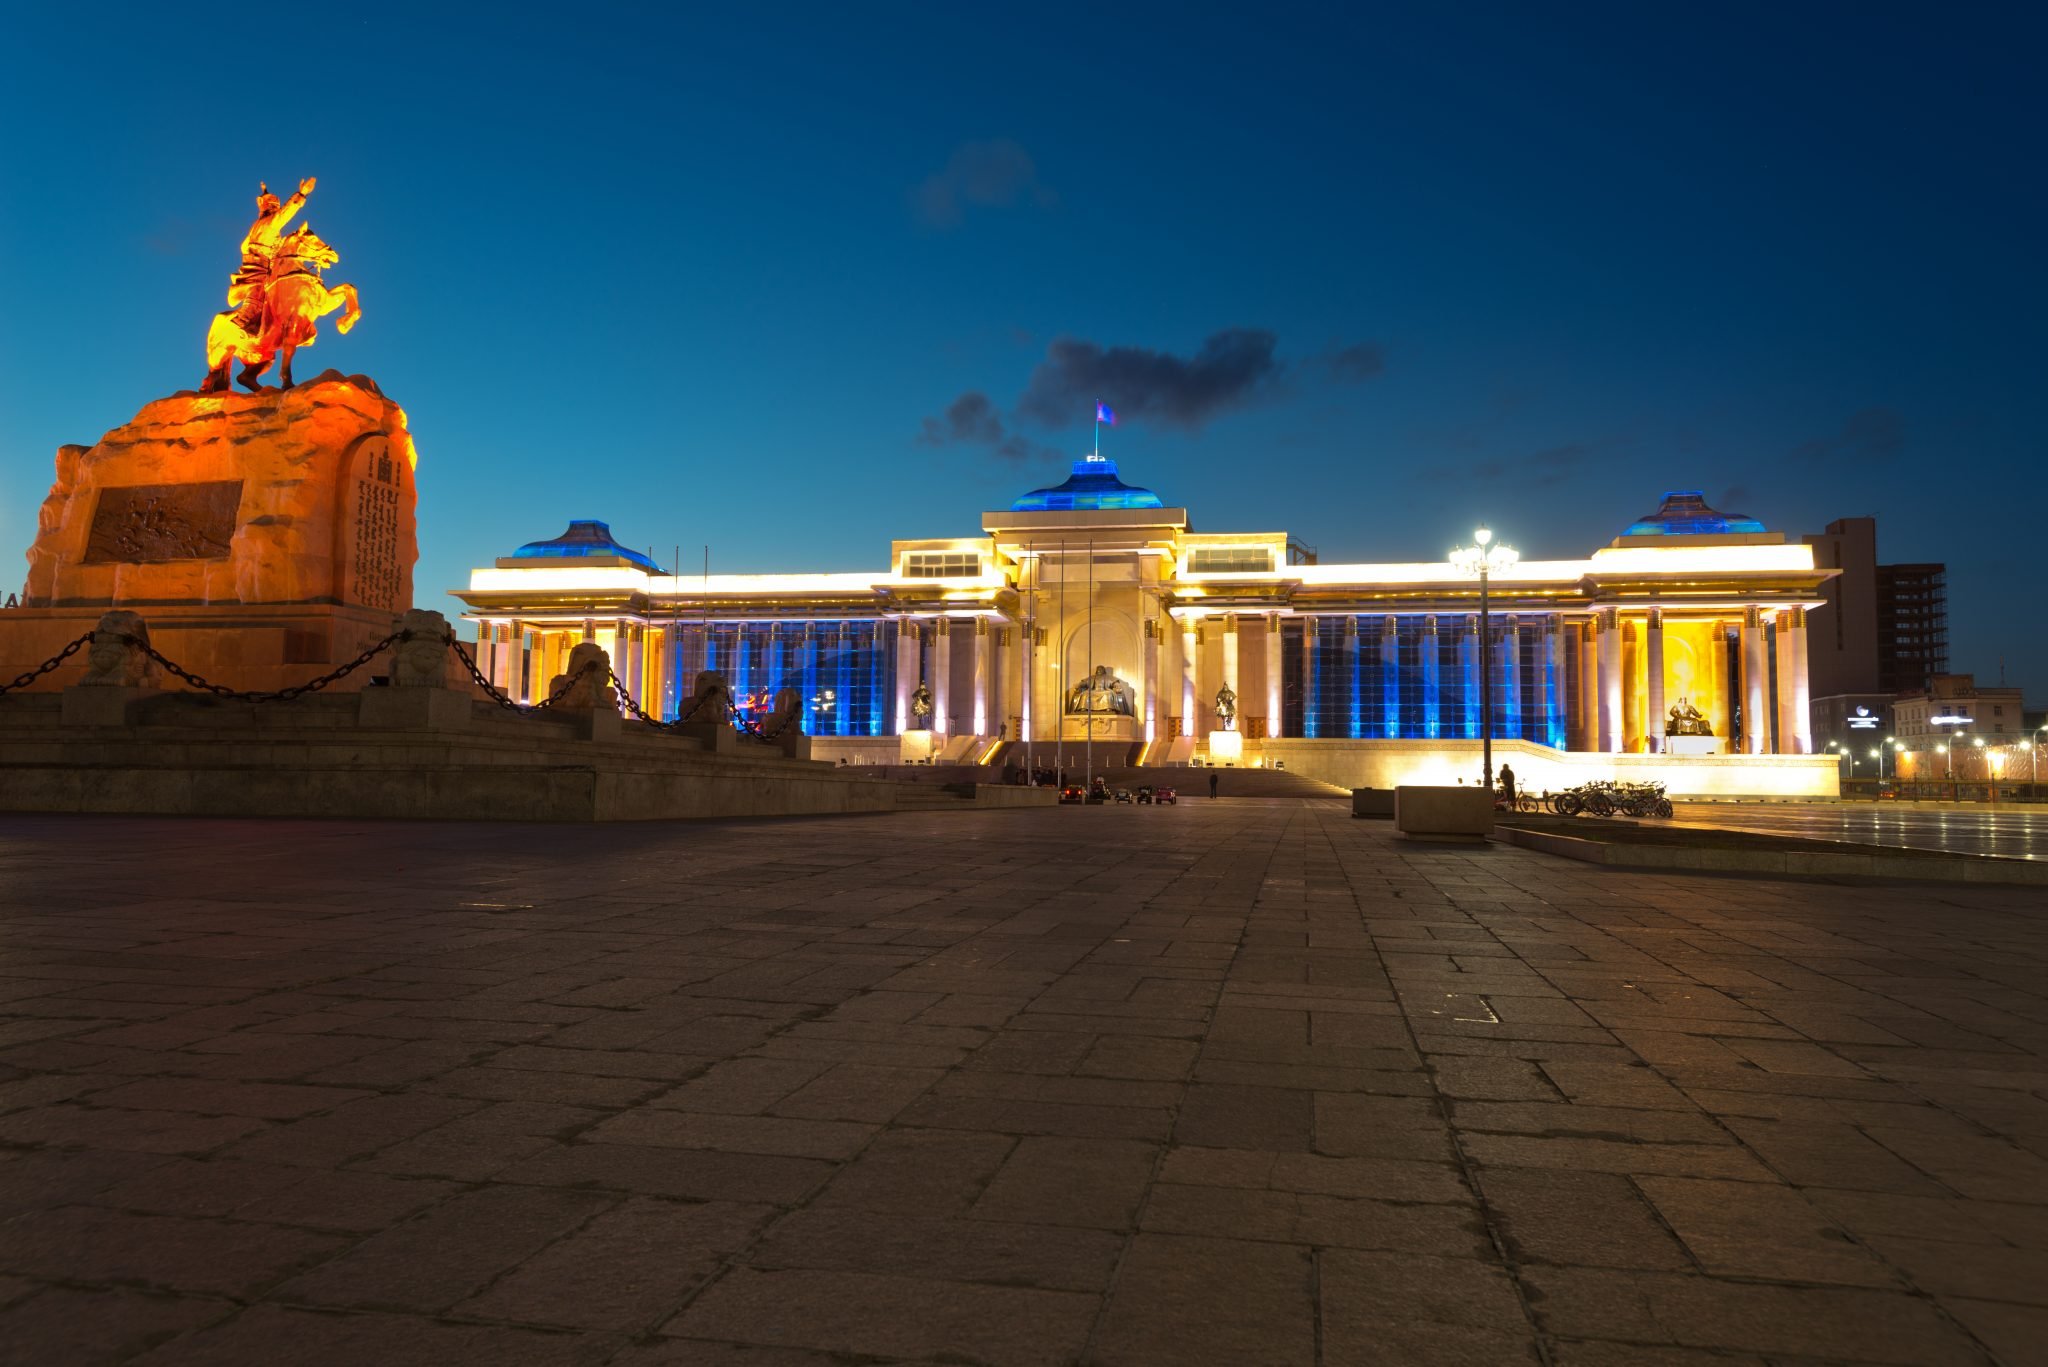 Chinggis Khan Square